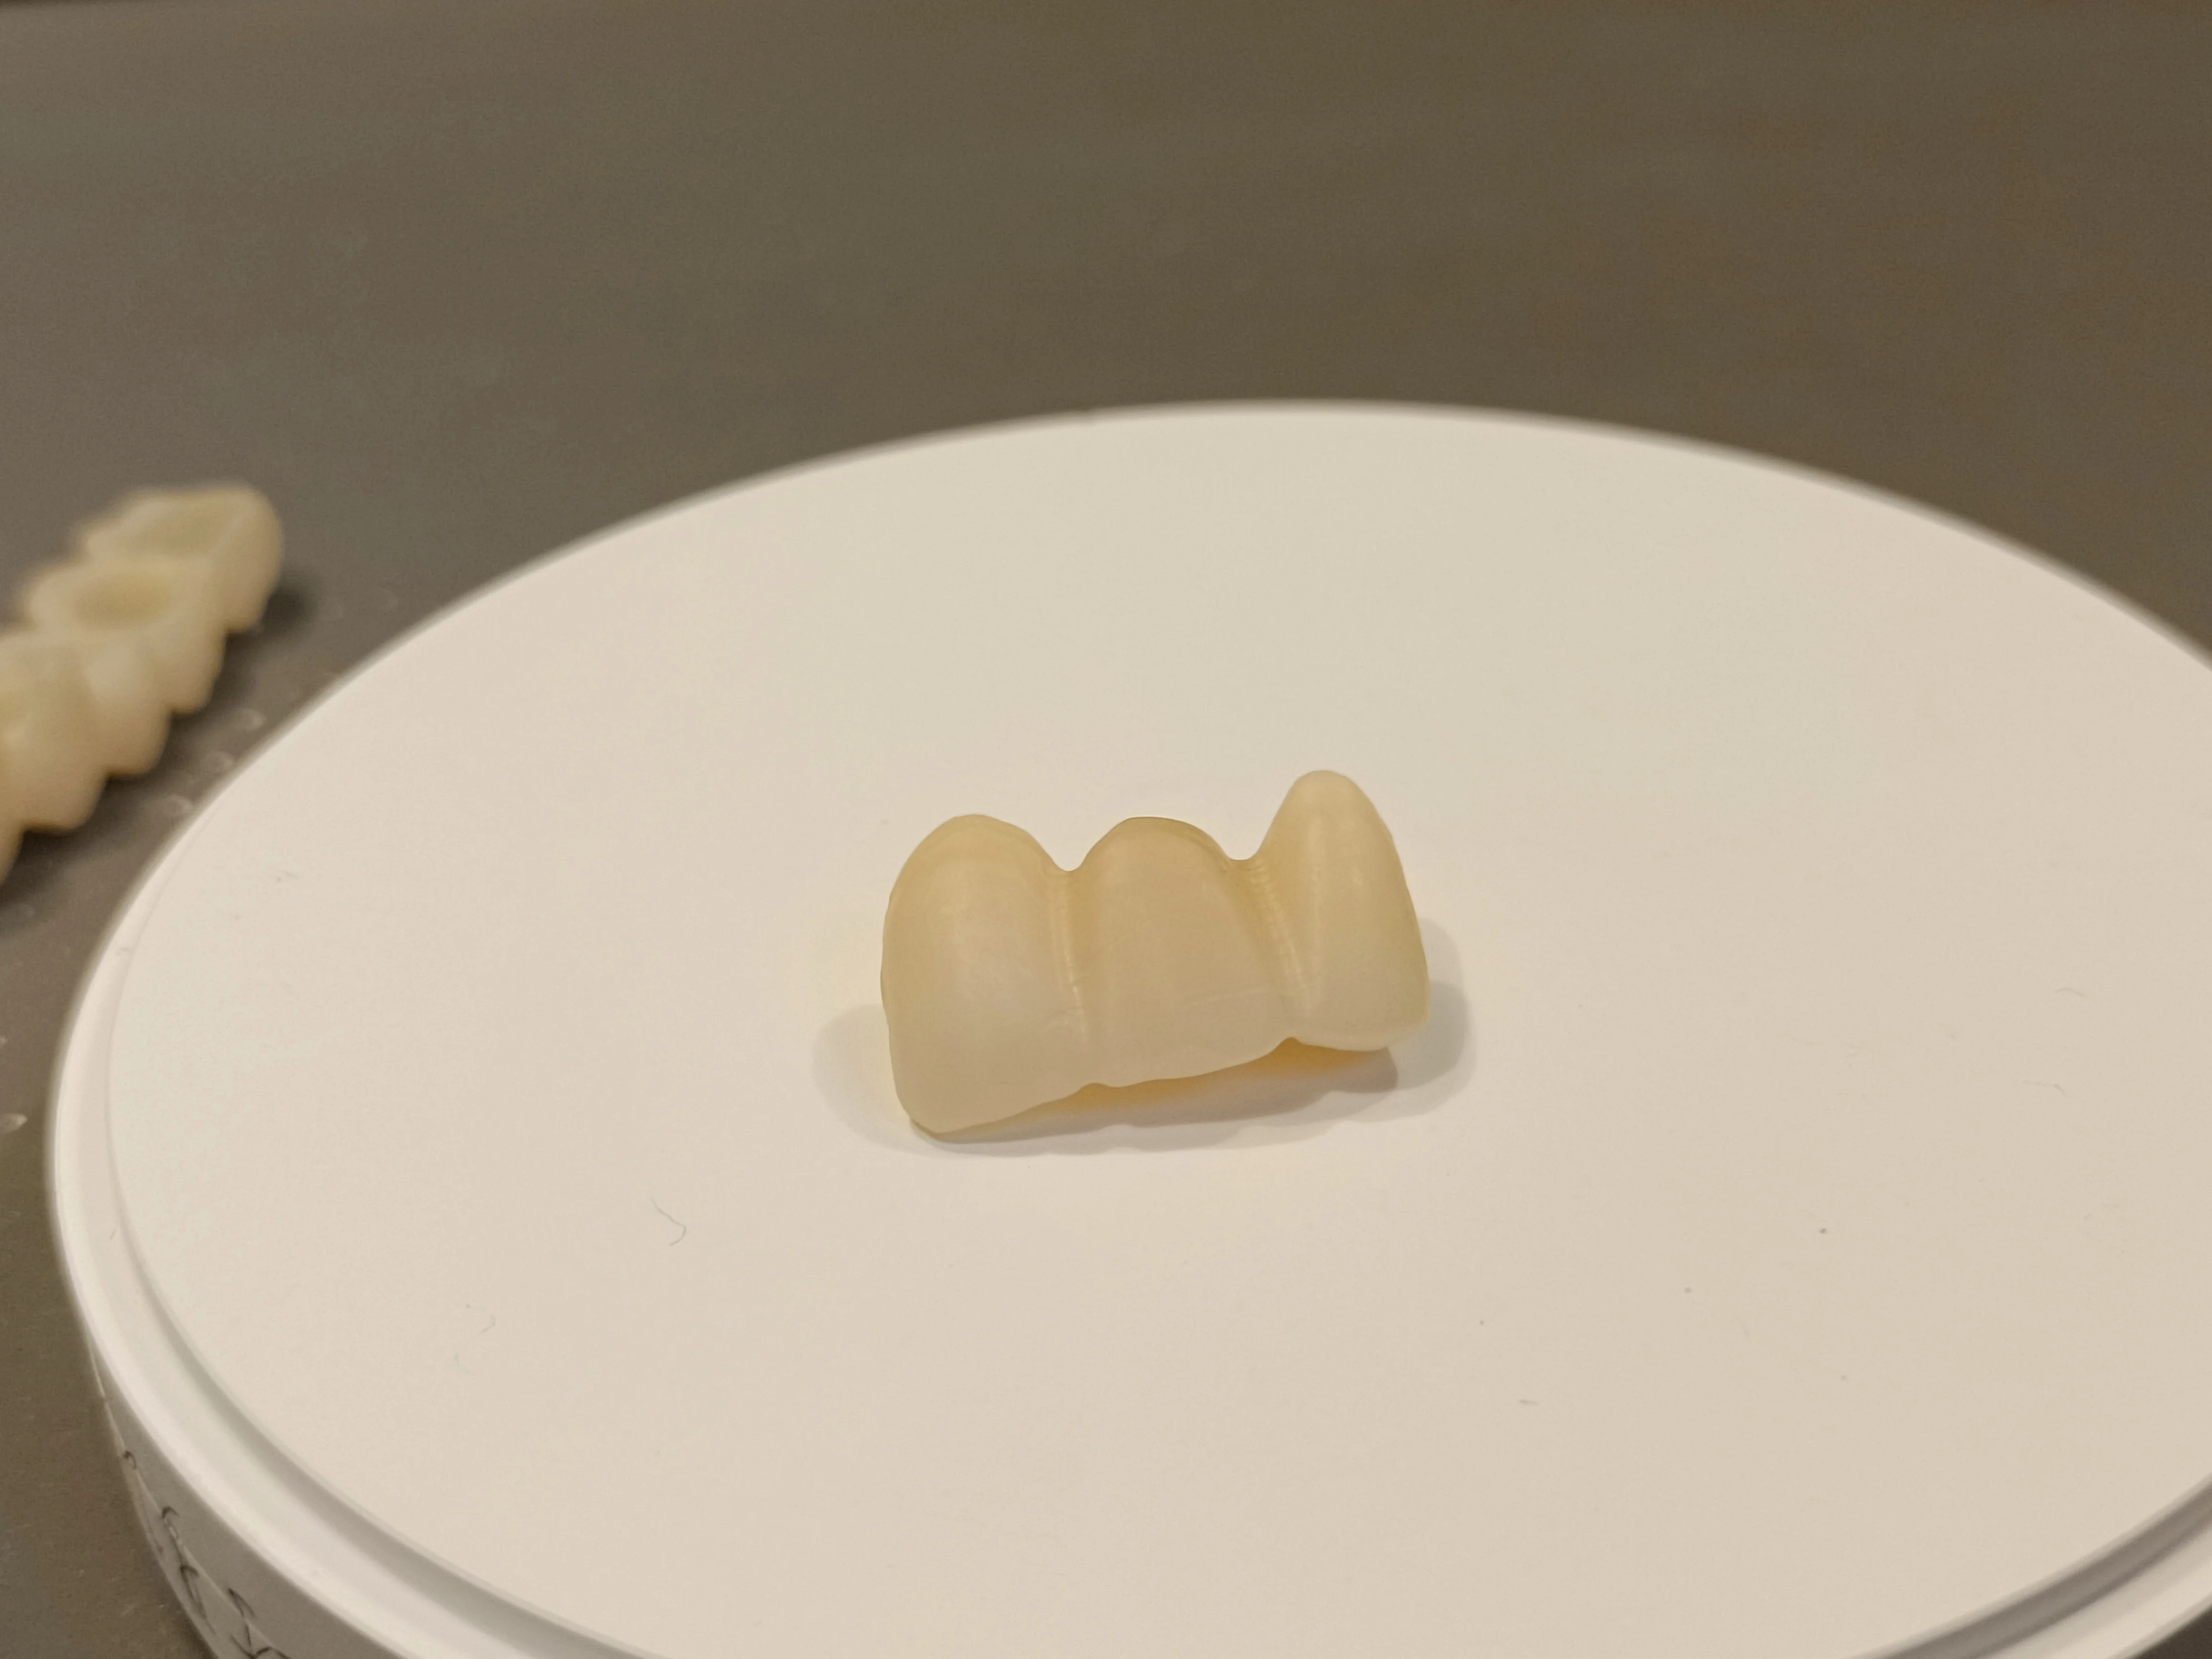 UT+ML Multilayer Sirona Ceramic Block for Cerec Milling Machine,Anterior For Dental Lab,Zirconia New Product.